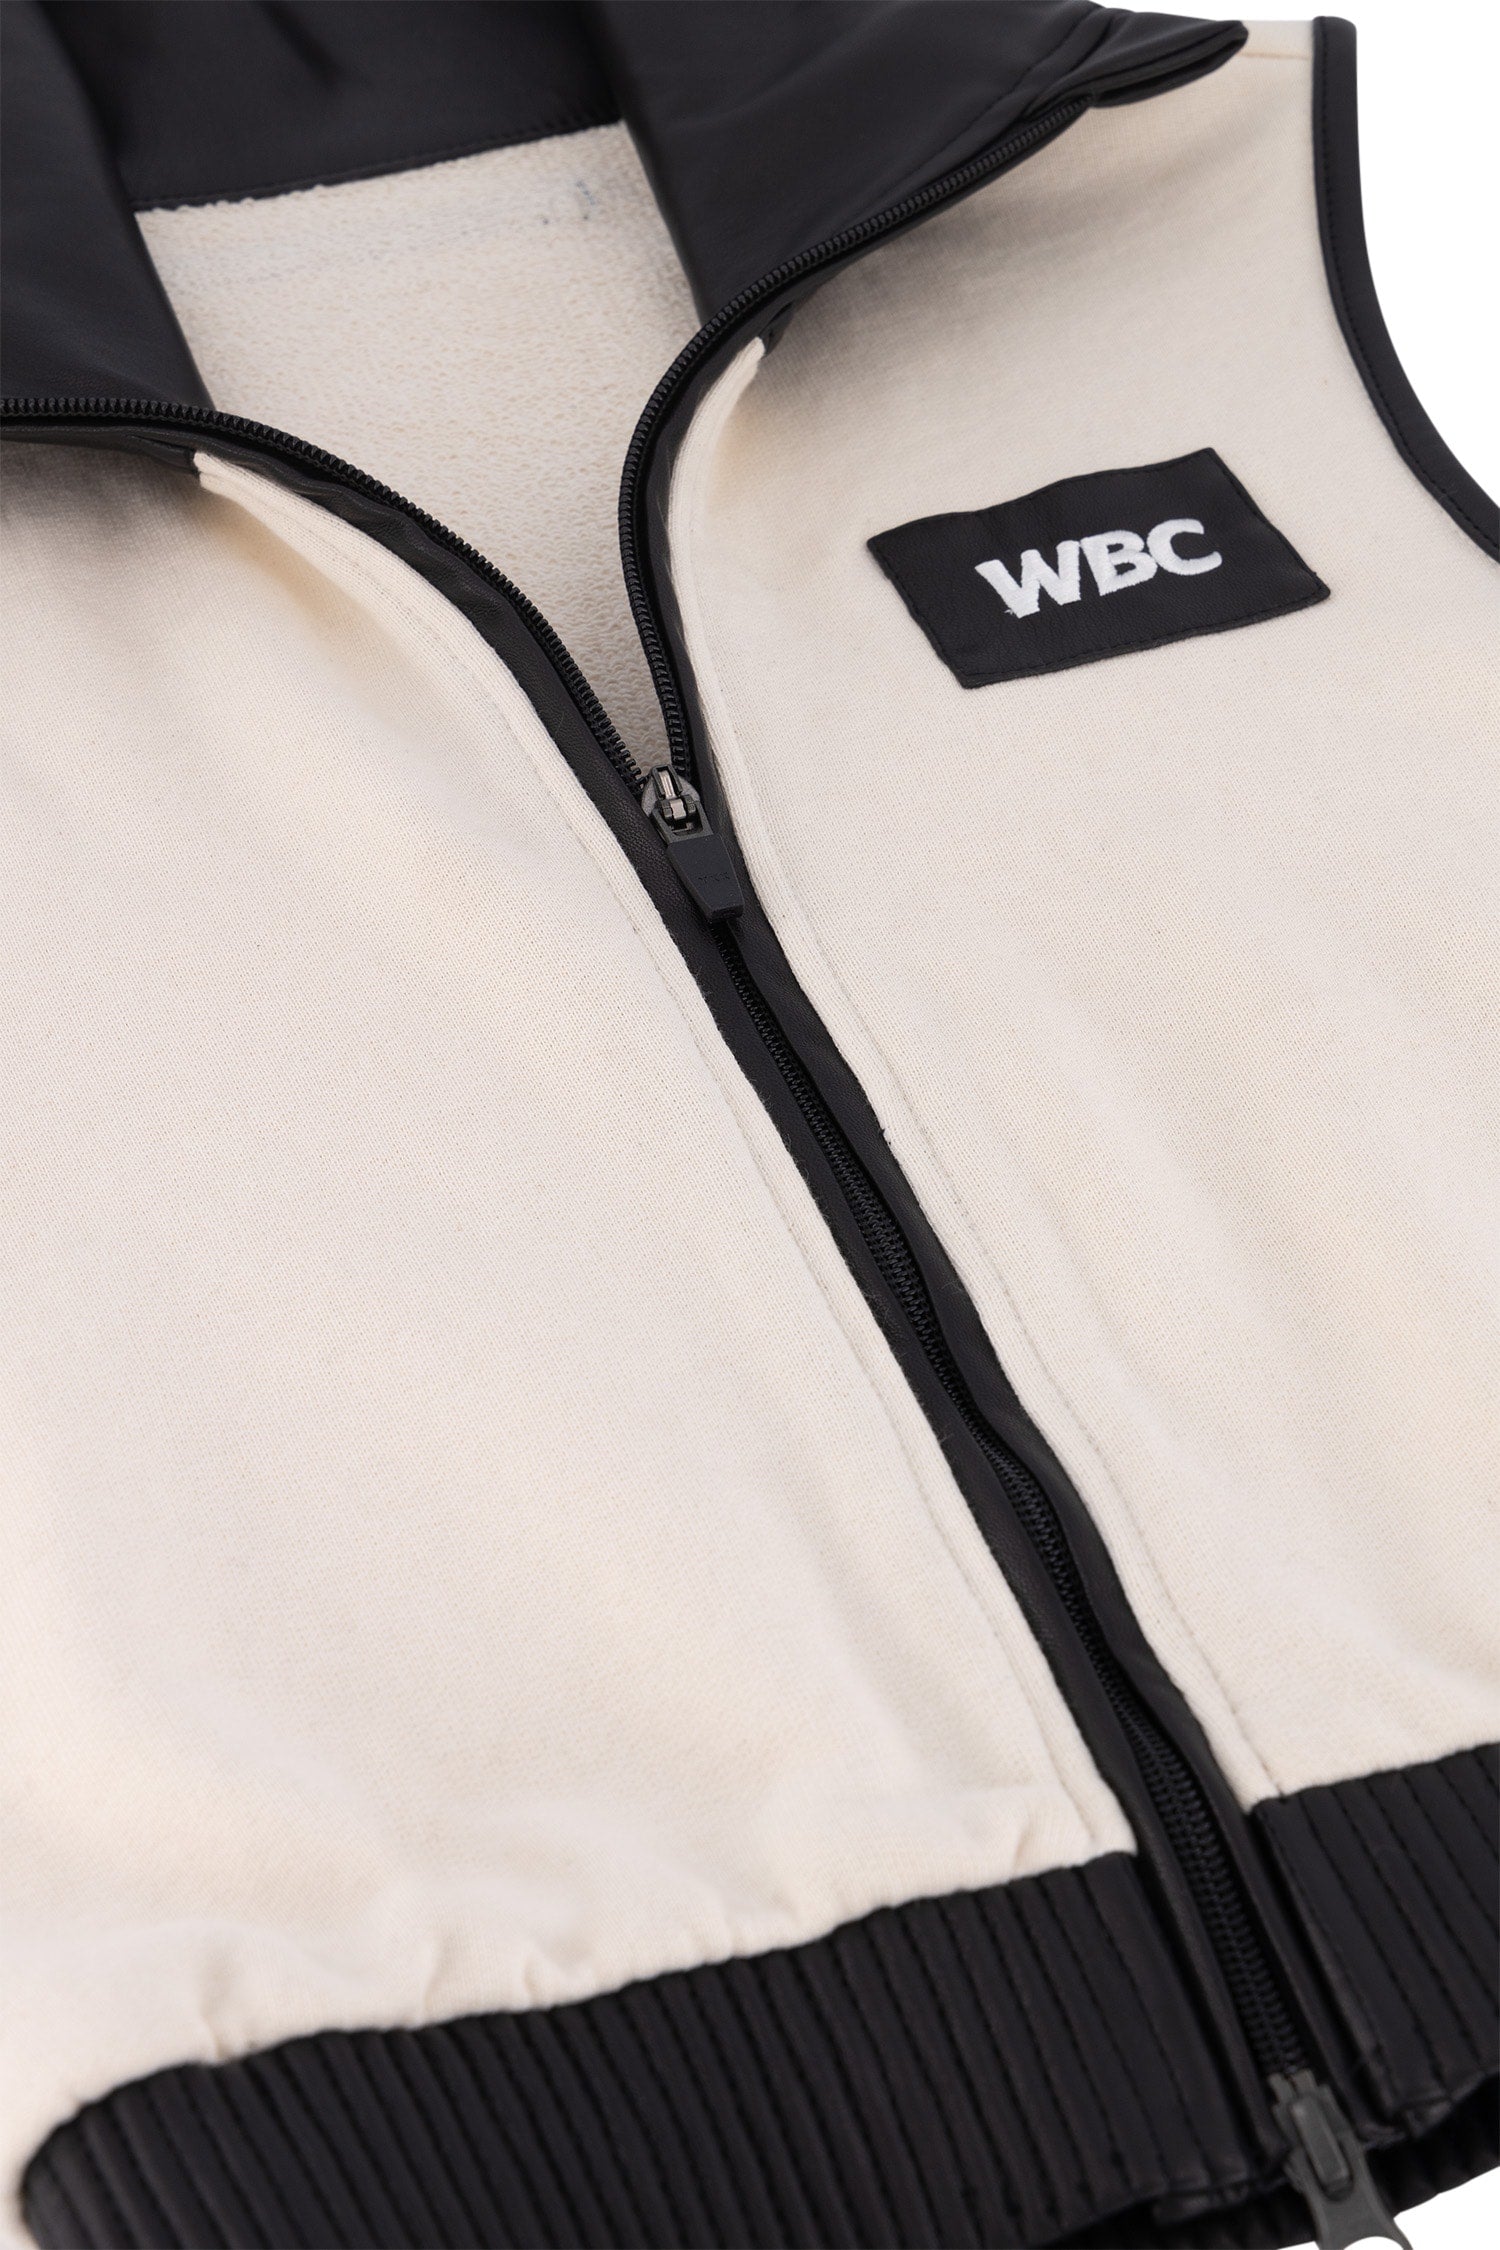 WBC Store Pants Athletic Vest